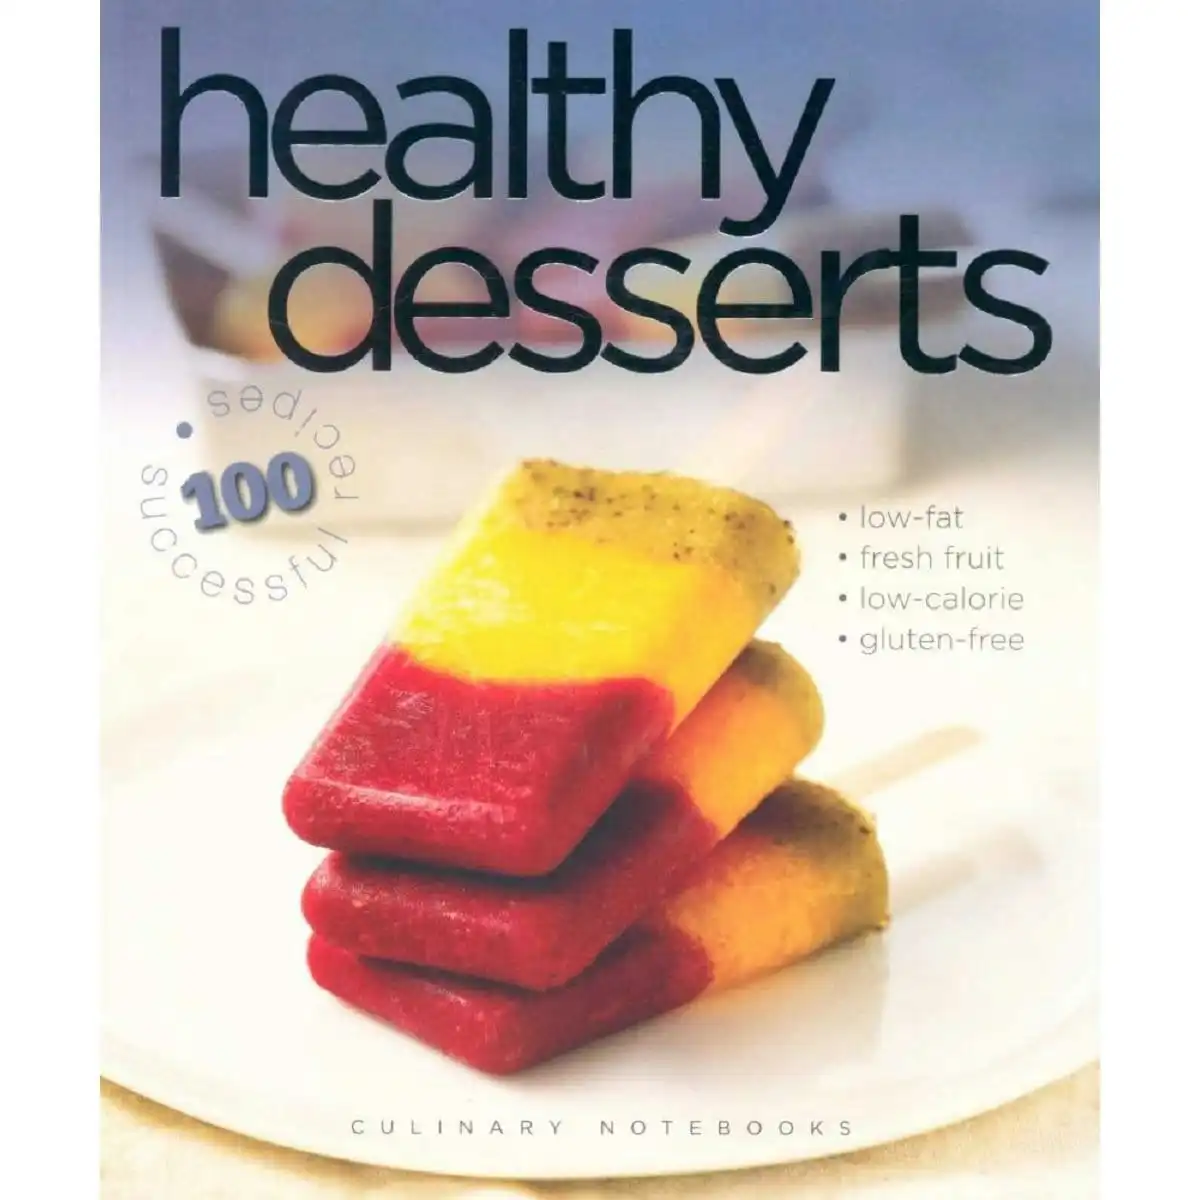 Healthy Desserts, by Carla Bardi